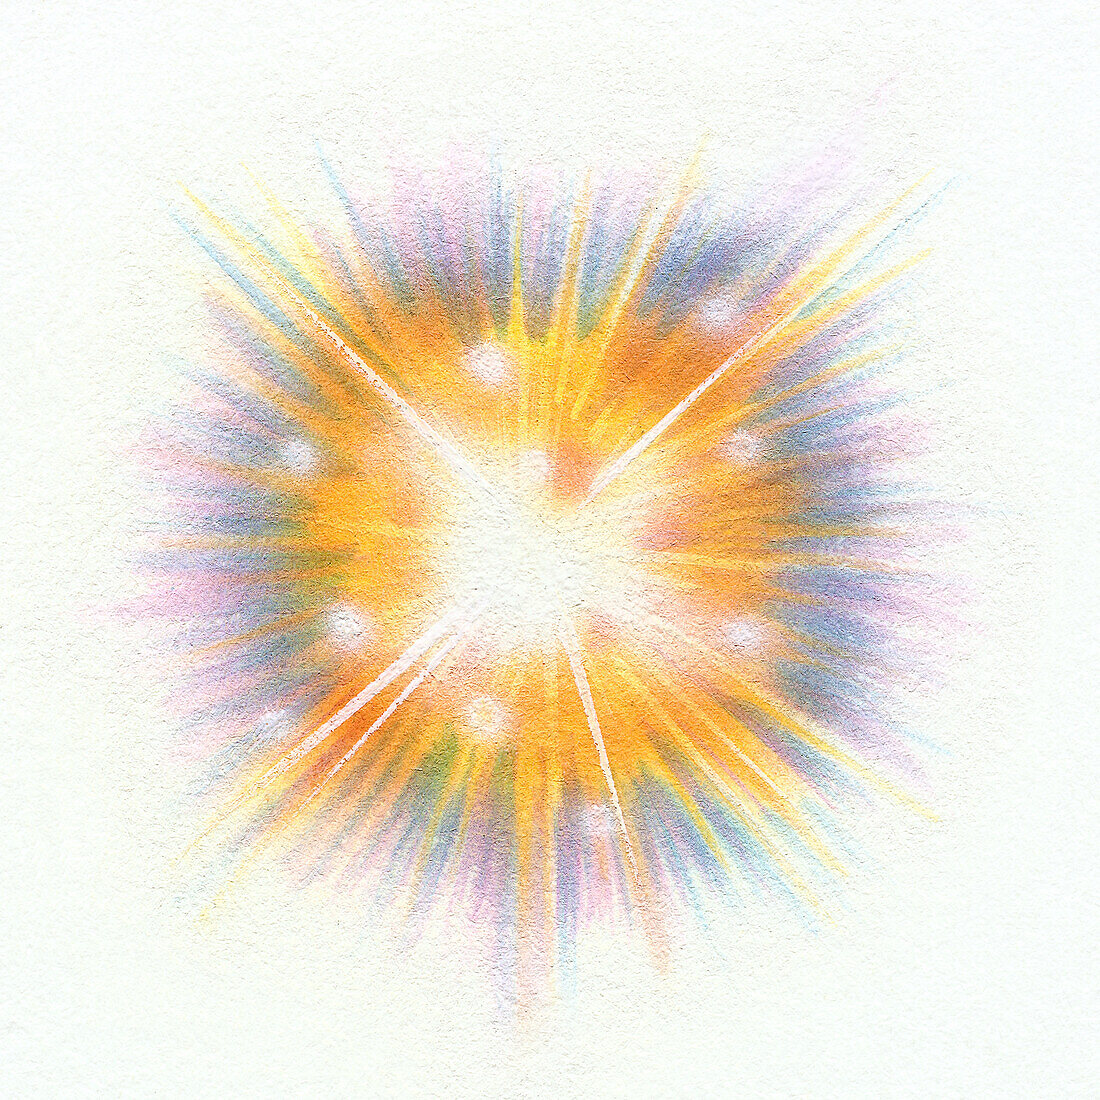 Exploding starburst, illustration